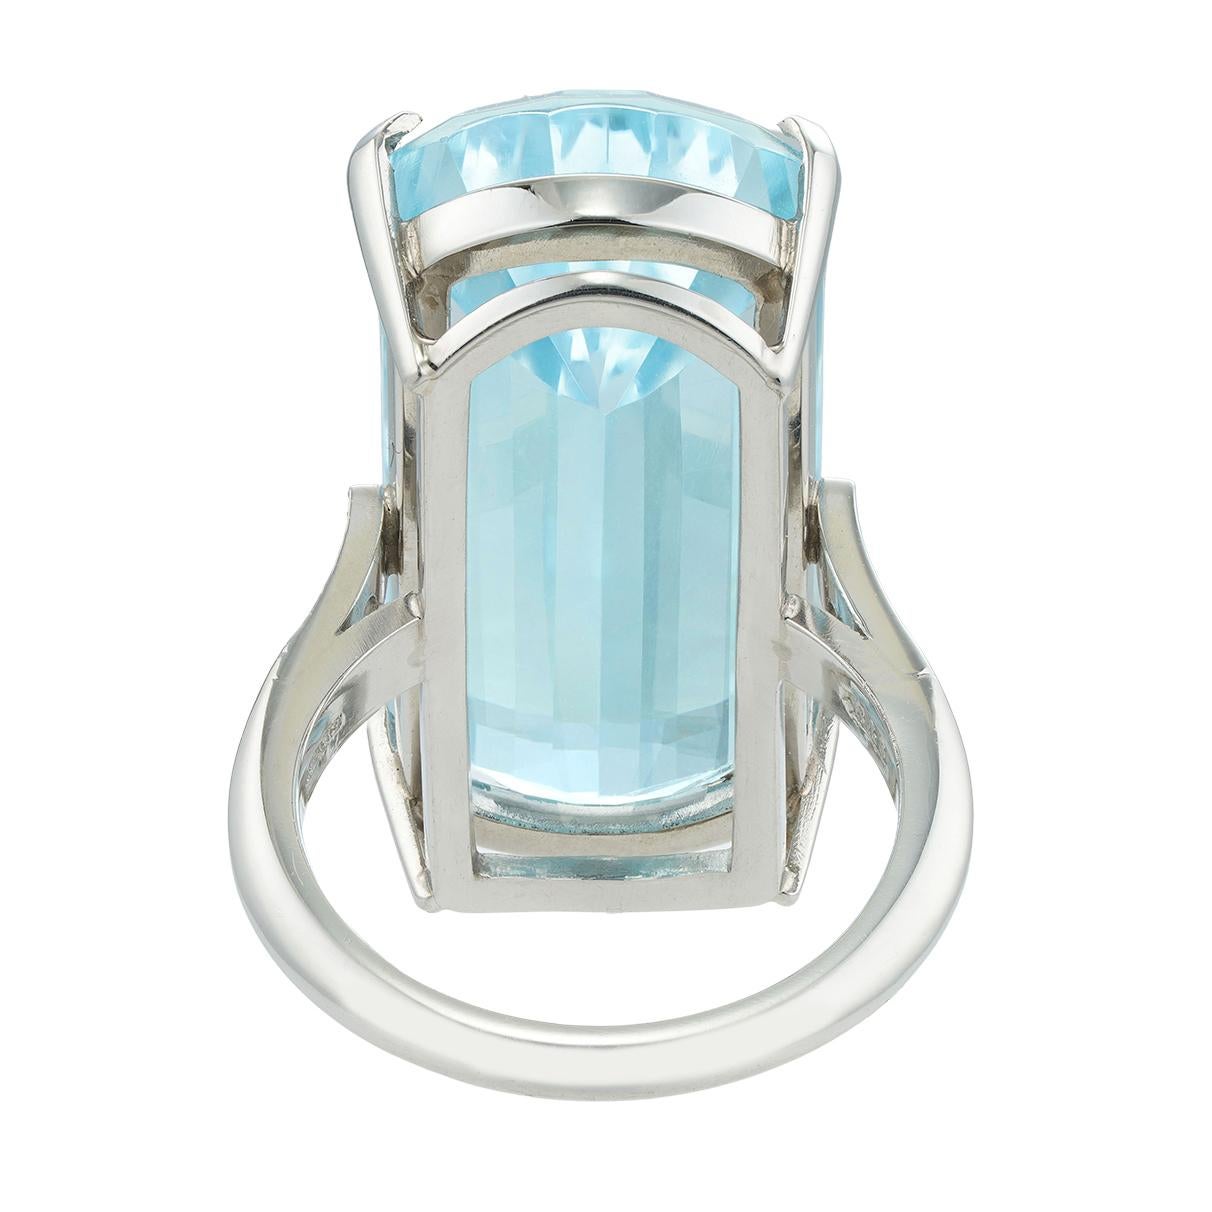 Brilliant Cut Single Stone Aquamarine Ring